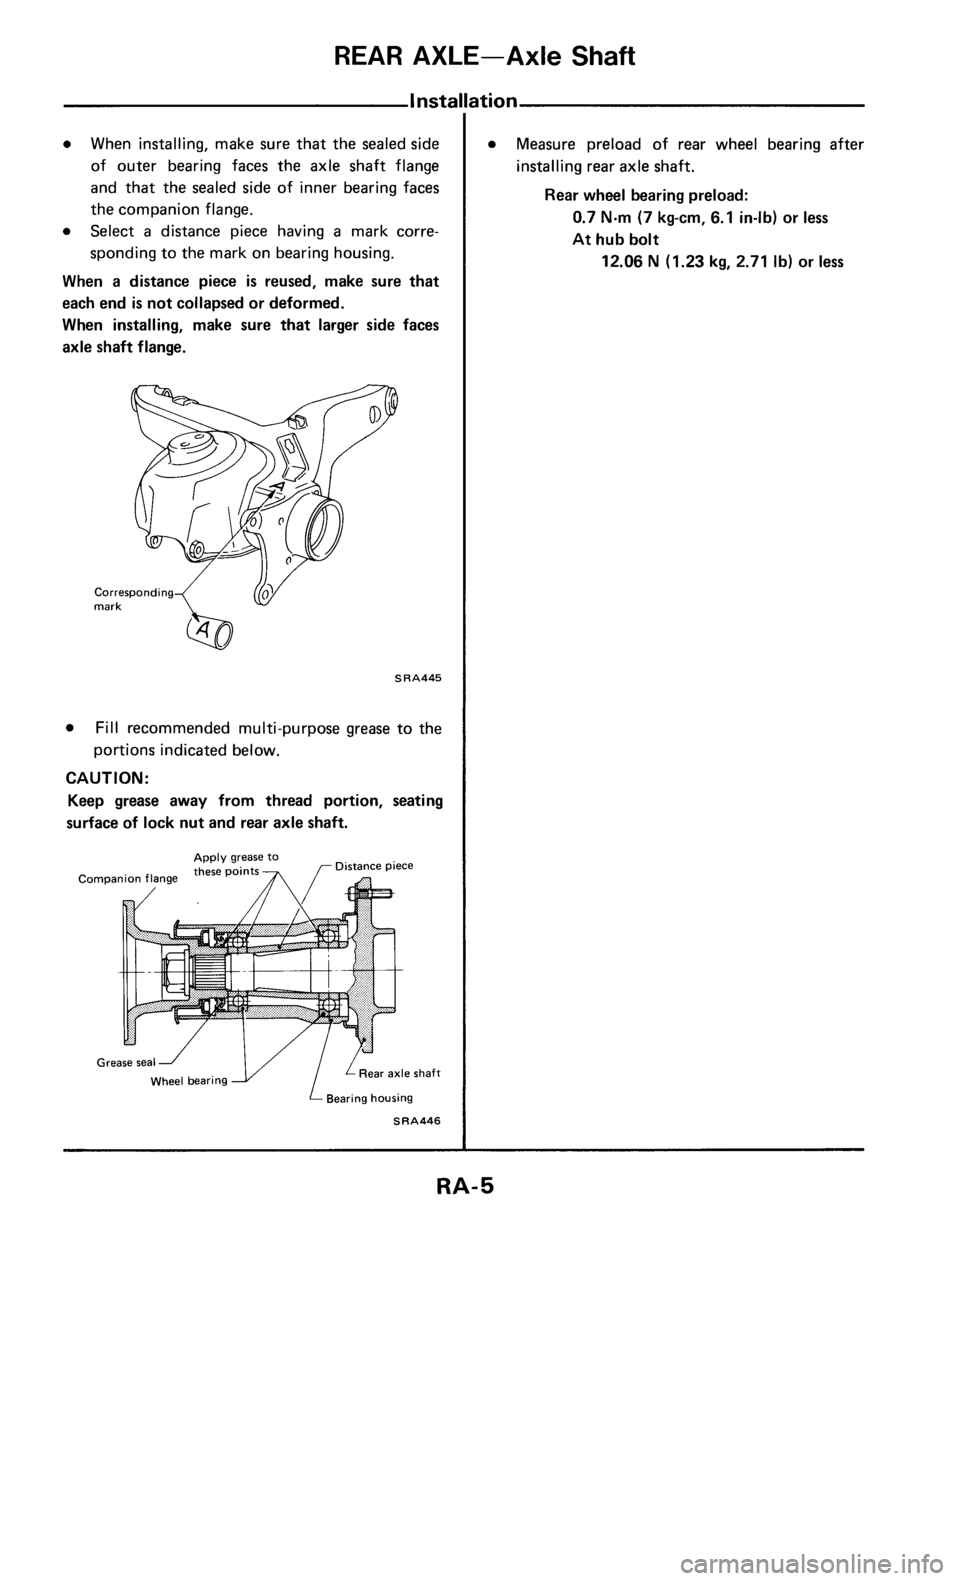 NISSAN 300ZX 1985 Z31 Rear Suspension Workshop Manual 